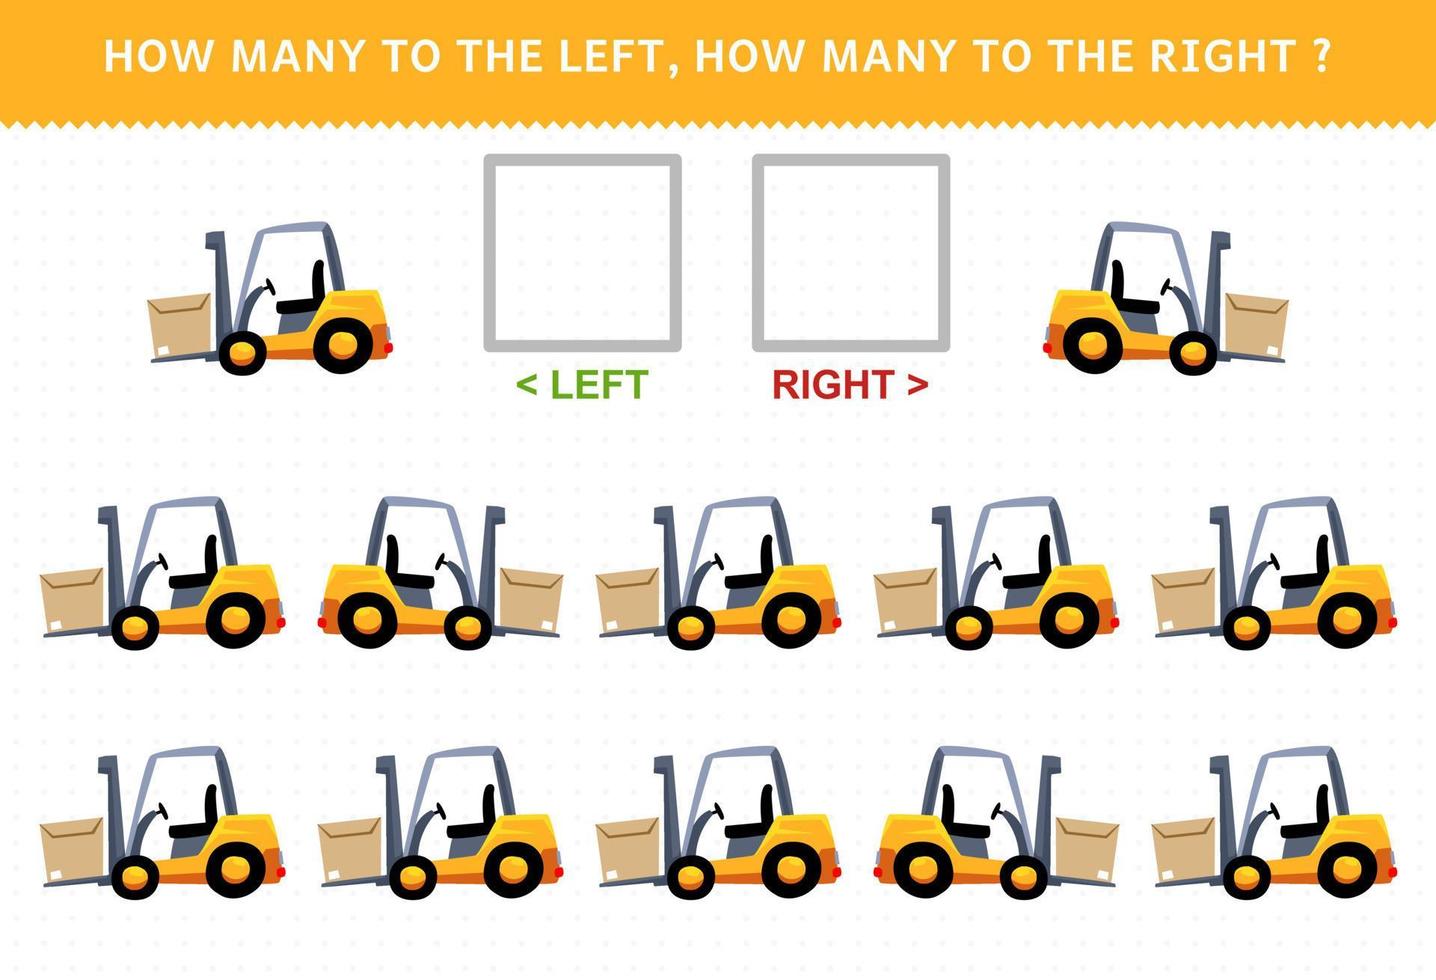 gioco educativo per bambini di contare l'immagine sinistra e destra con il carrello elevatore simpatico cartone animato vettore